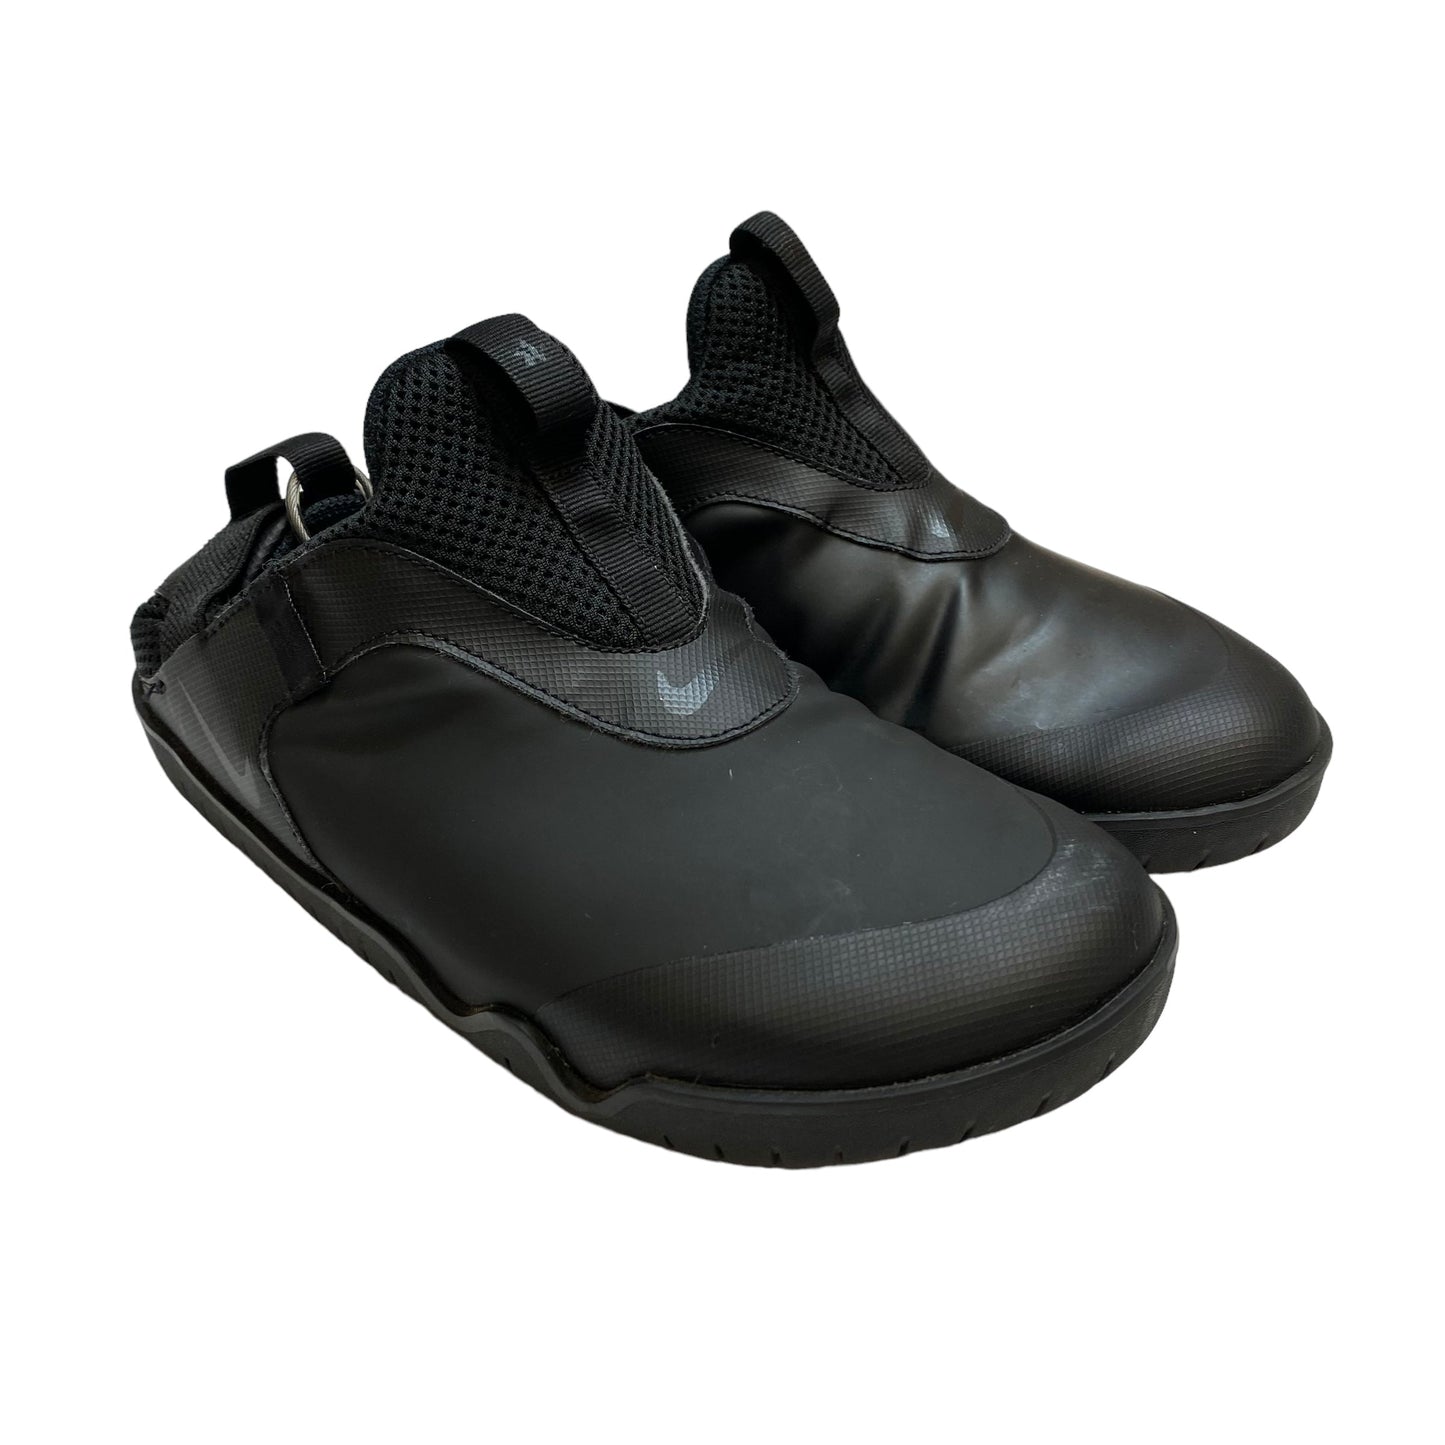 Black Shoes Athletic Nike, Size 6